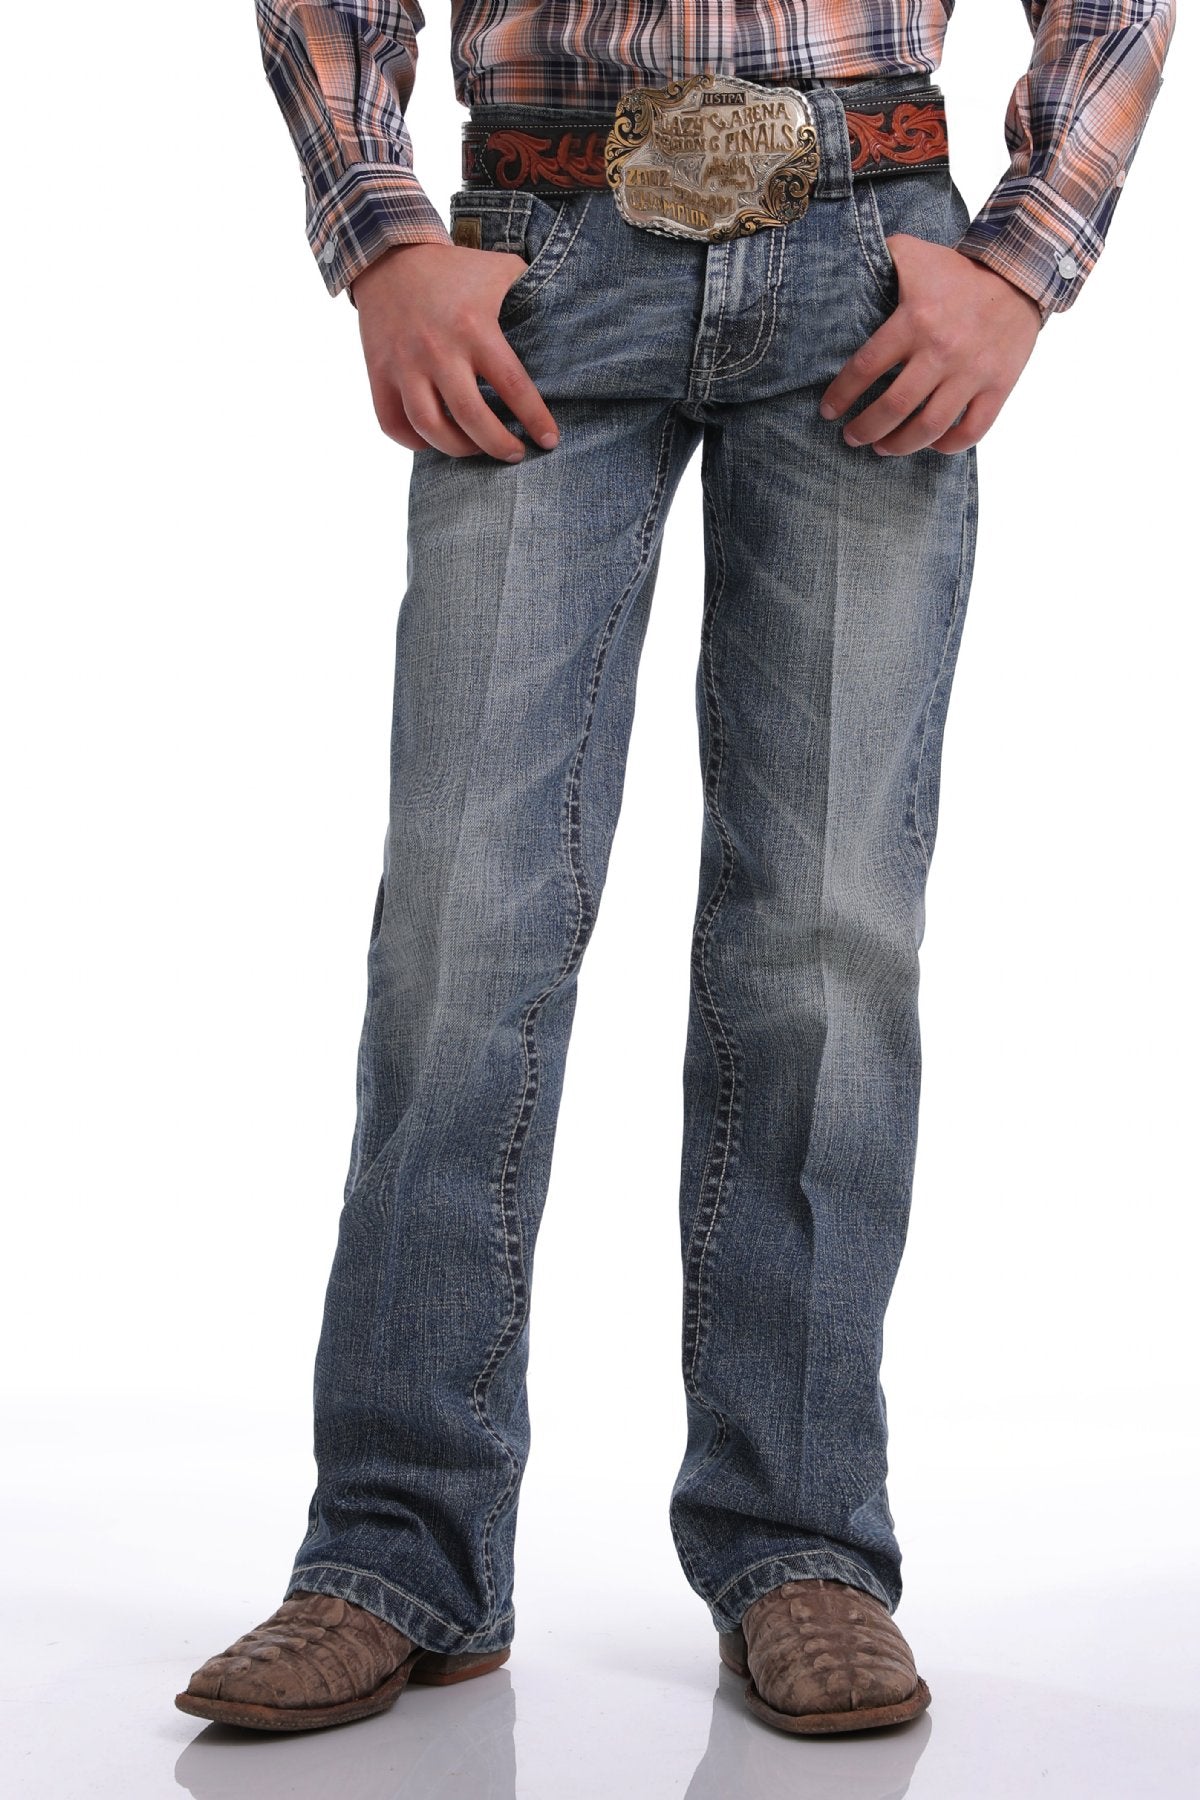 CINCH Boys Slim Fit-Medium Wash Jeans